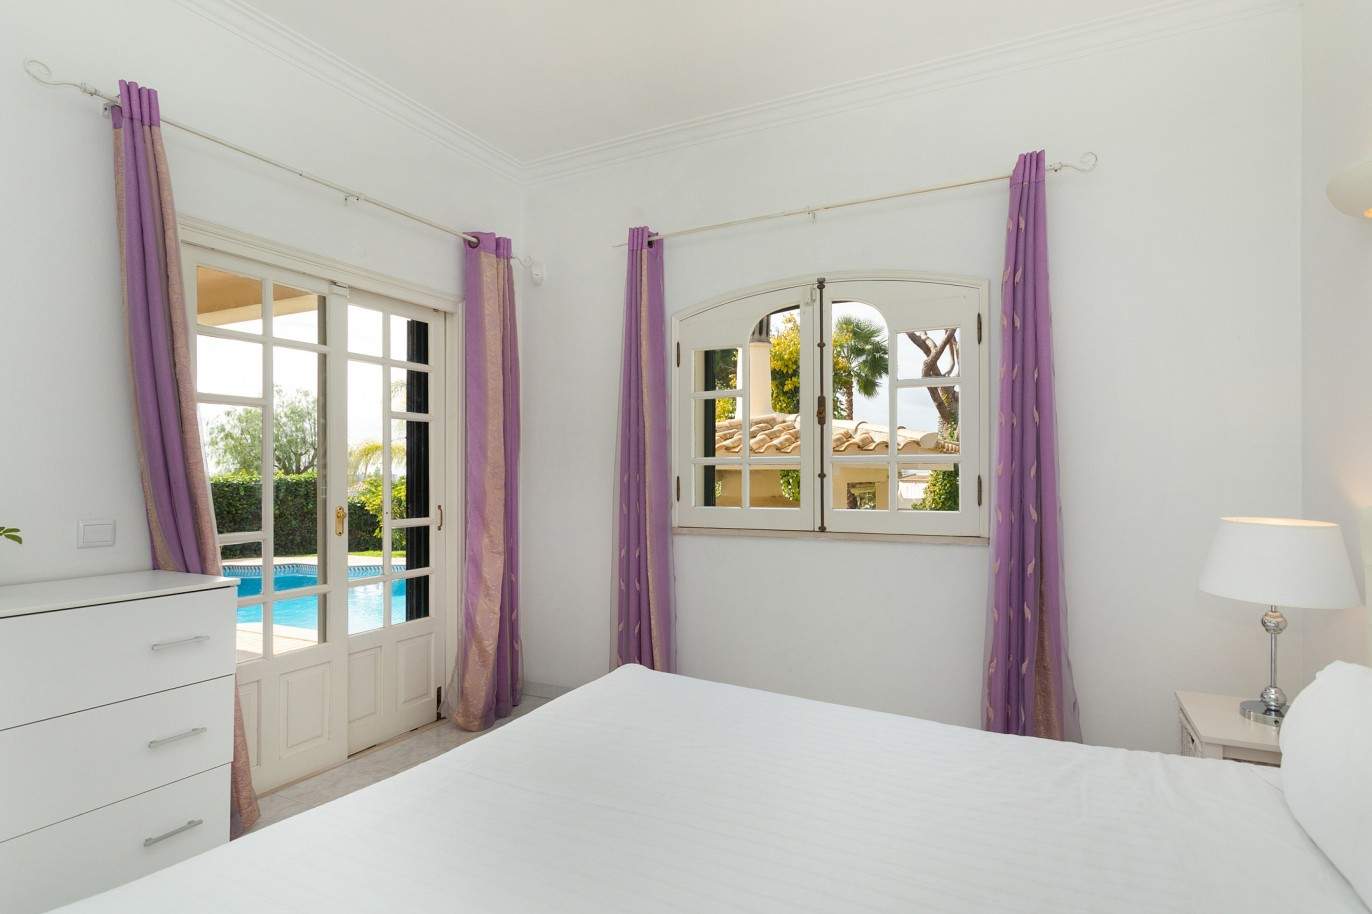 5 Bedroom Villa with swimming pool, for sale in Vilamoura, Algarve_212555